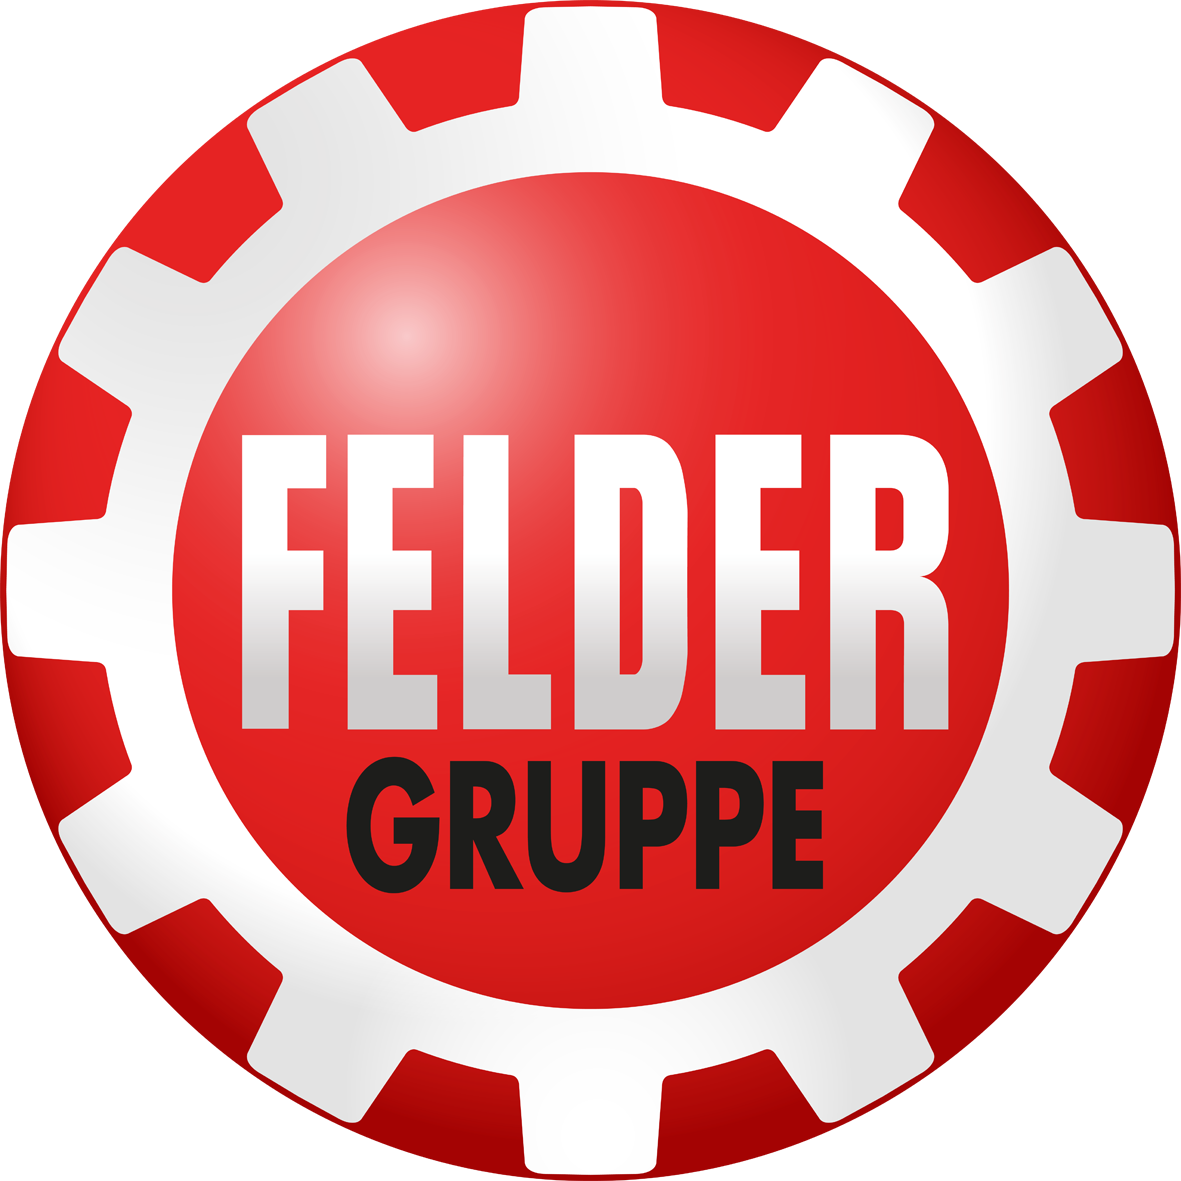 Felder_Gruppe_Logo.png